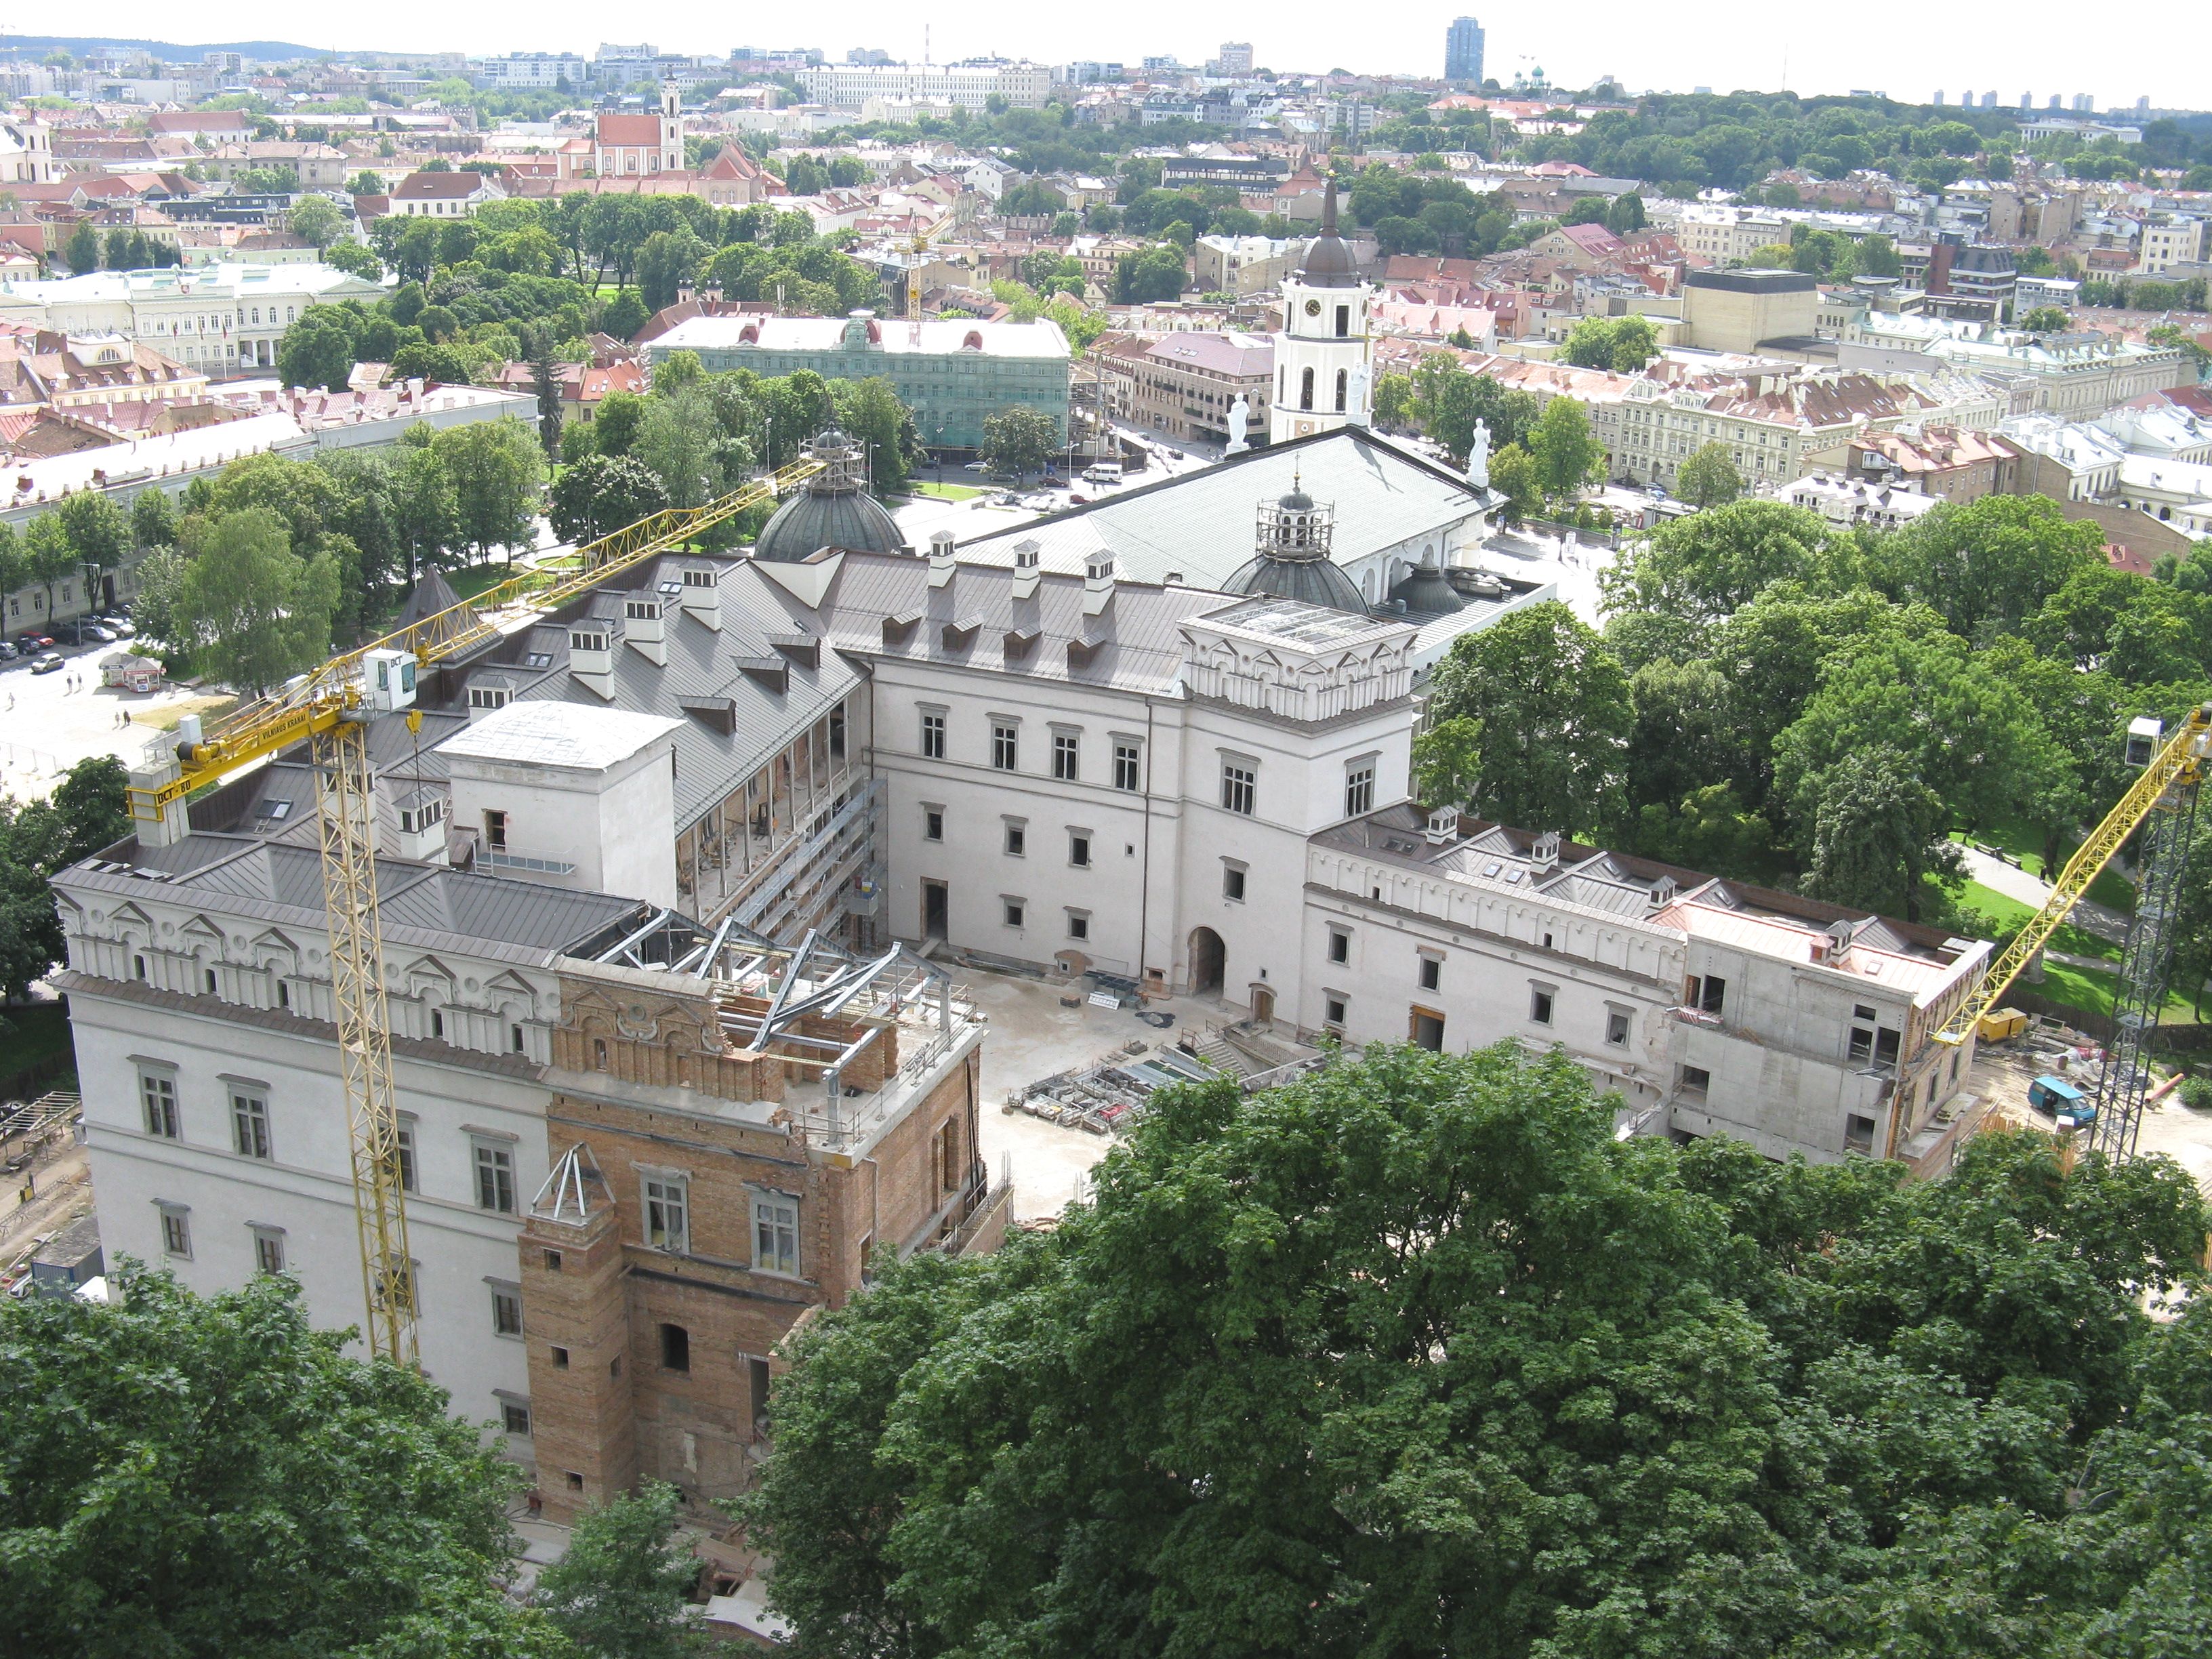 Blick auf das Schloss in Vilnius